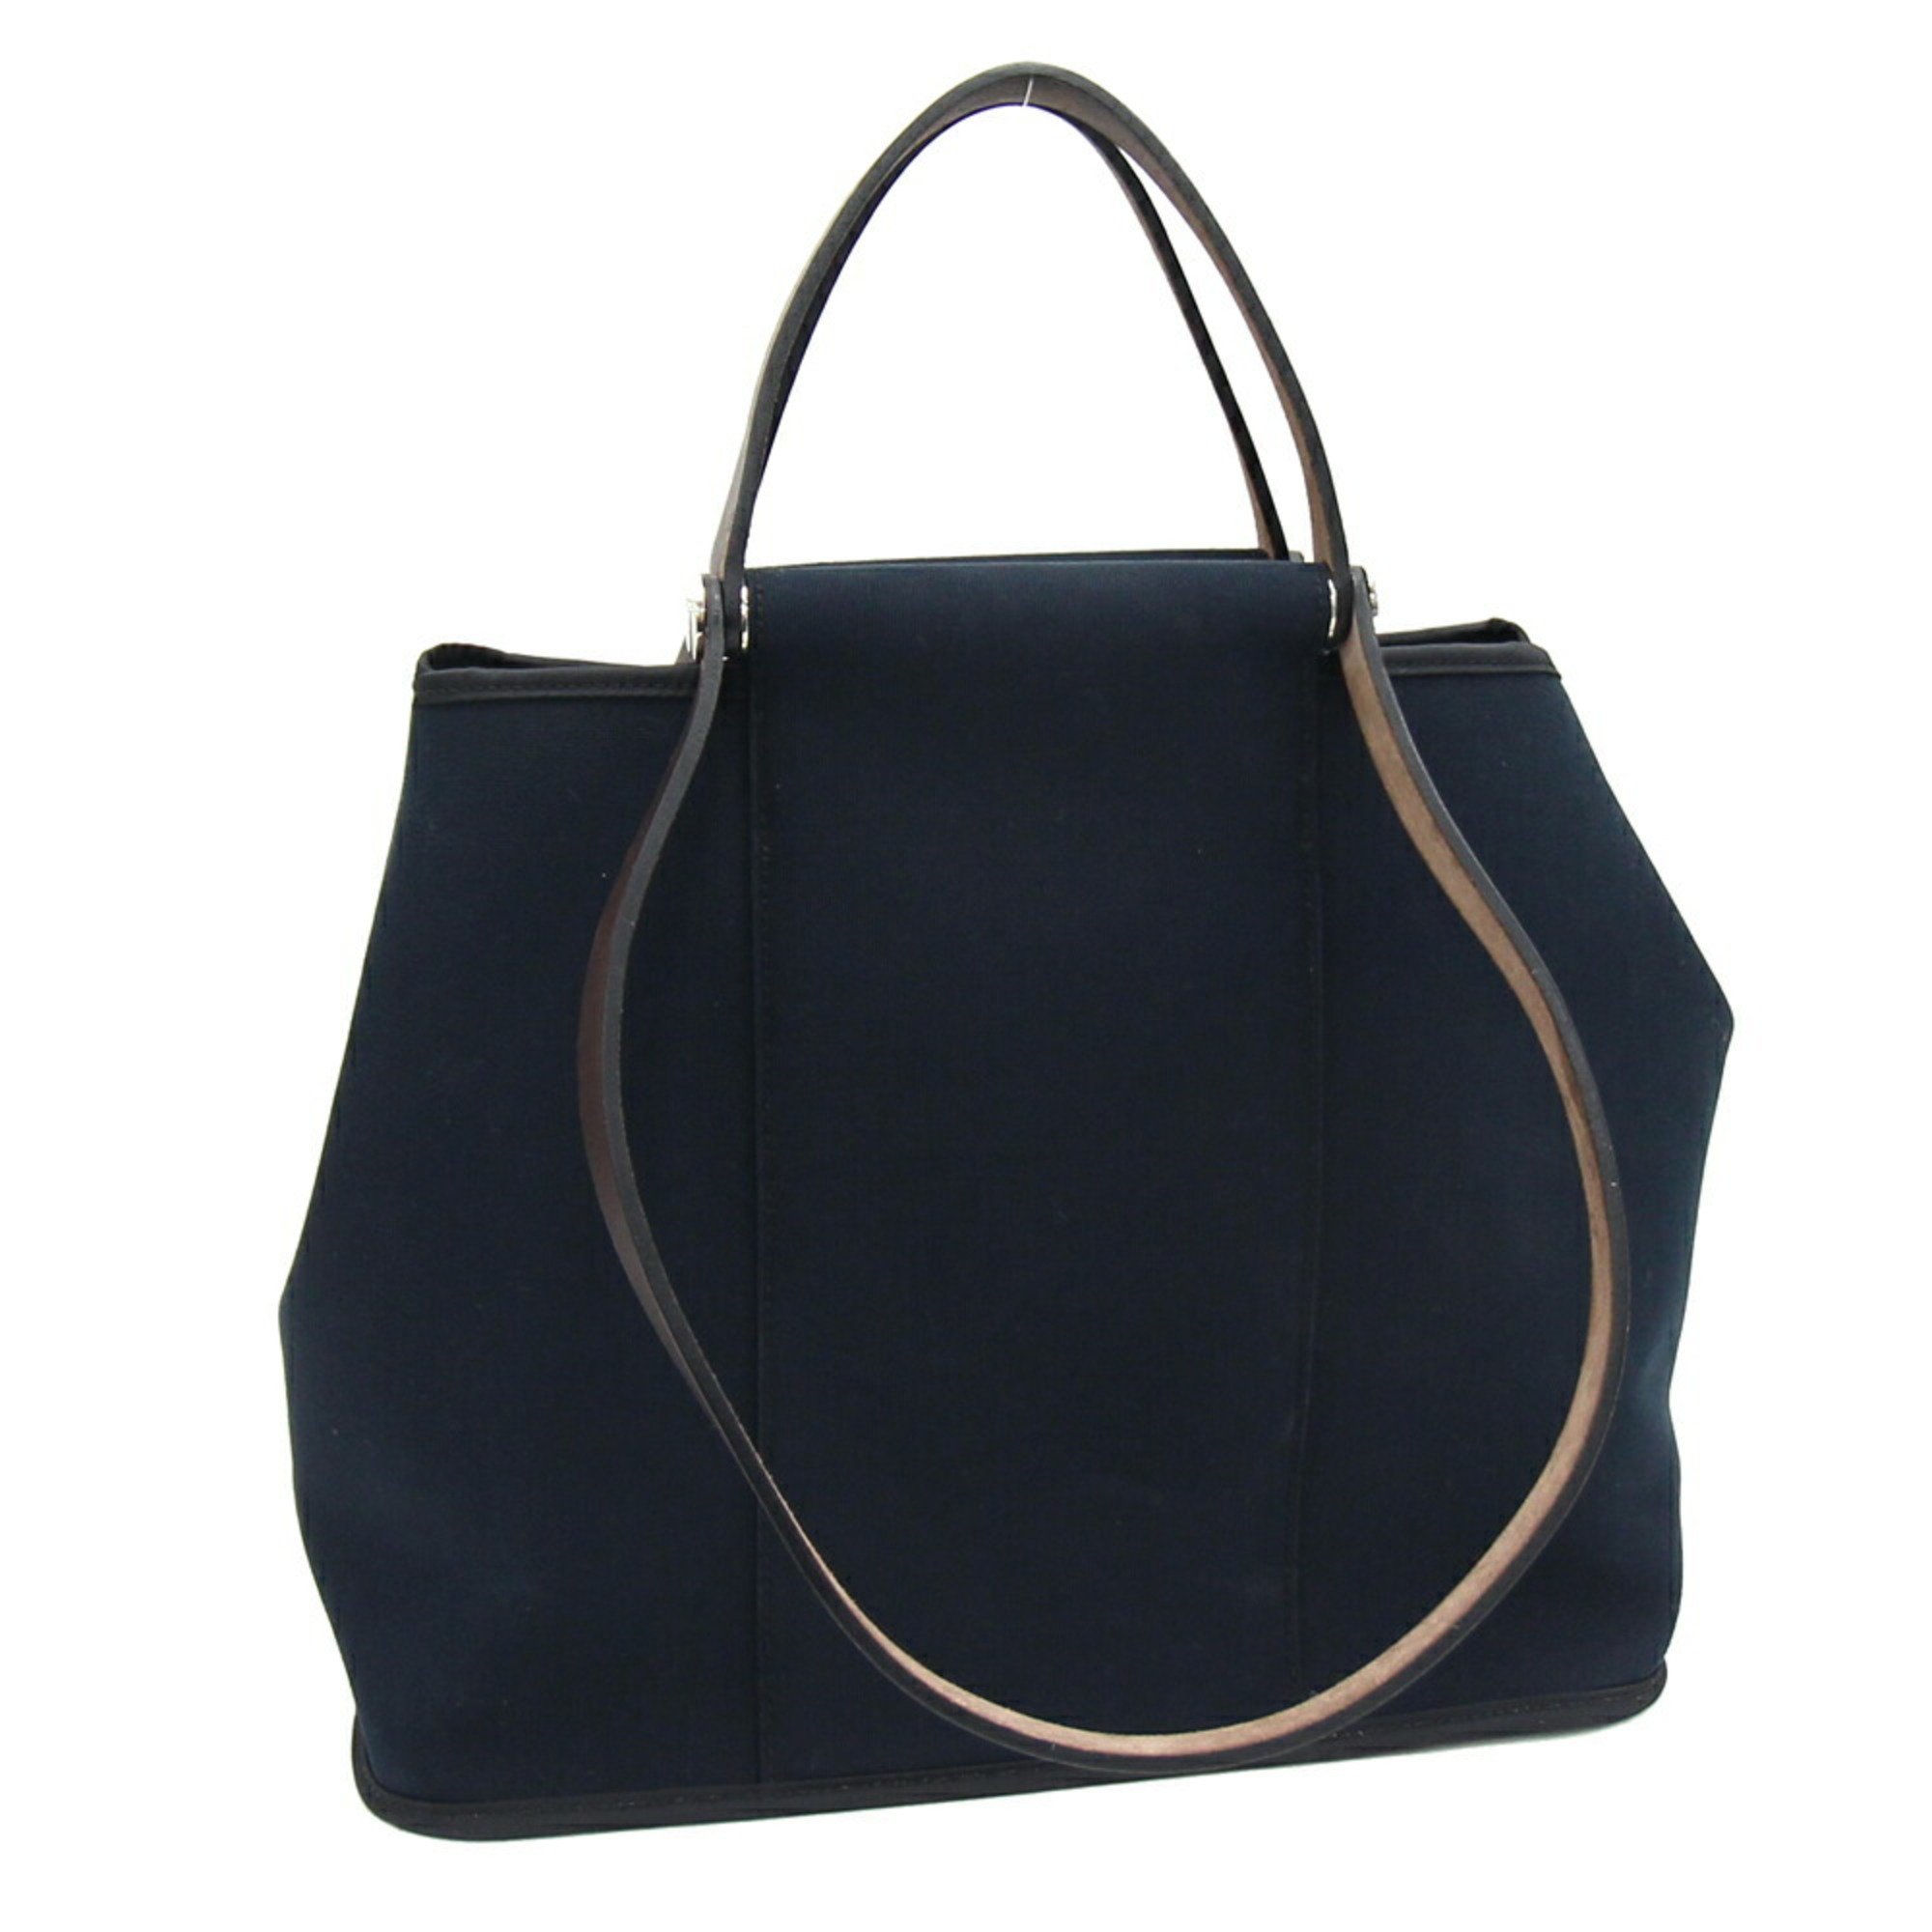 Hermes handbag Cabag PM black canvas leather □M stamped 2009 production tote bag shoulder ladies HERMES